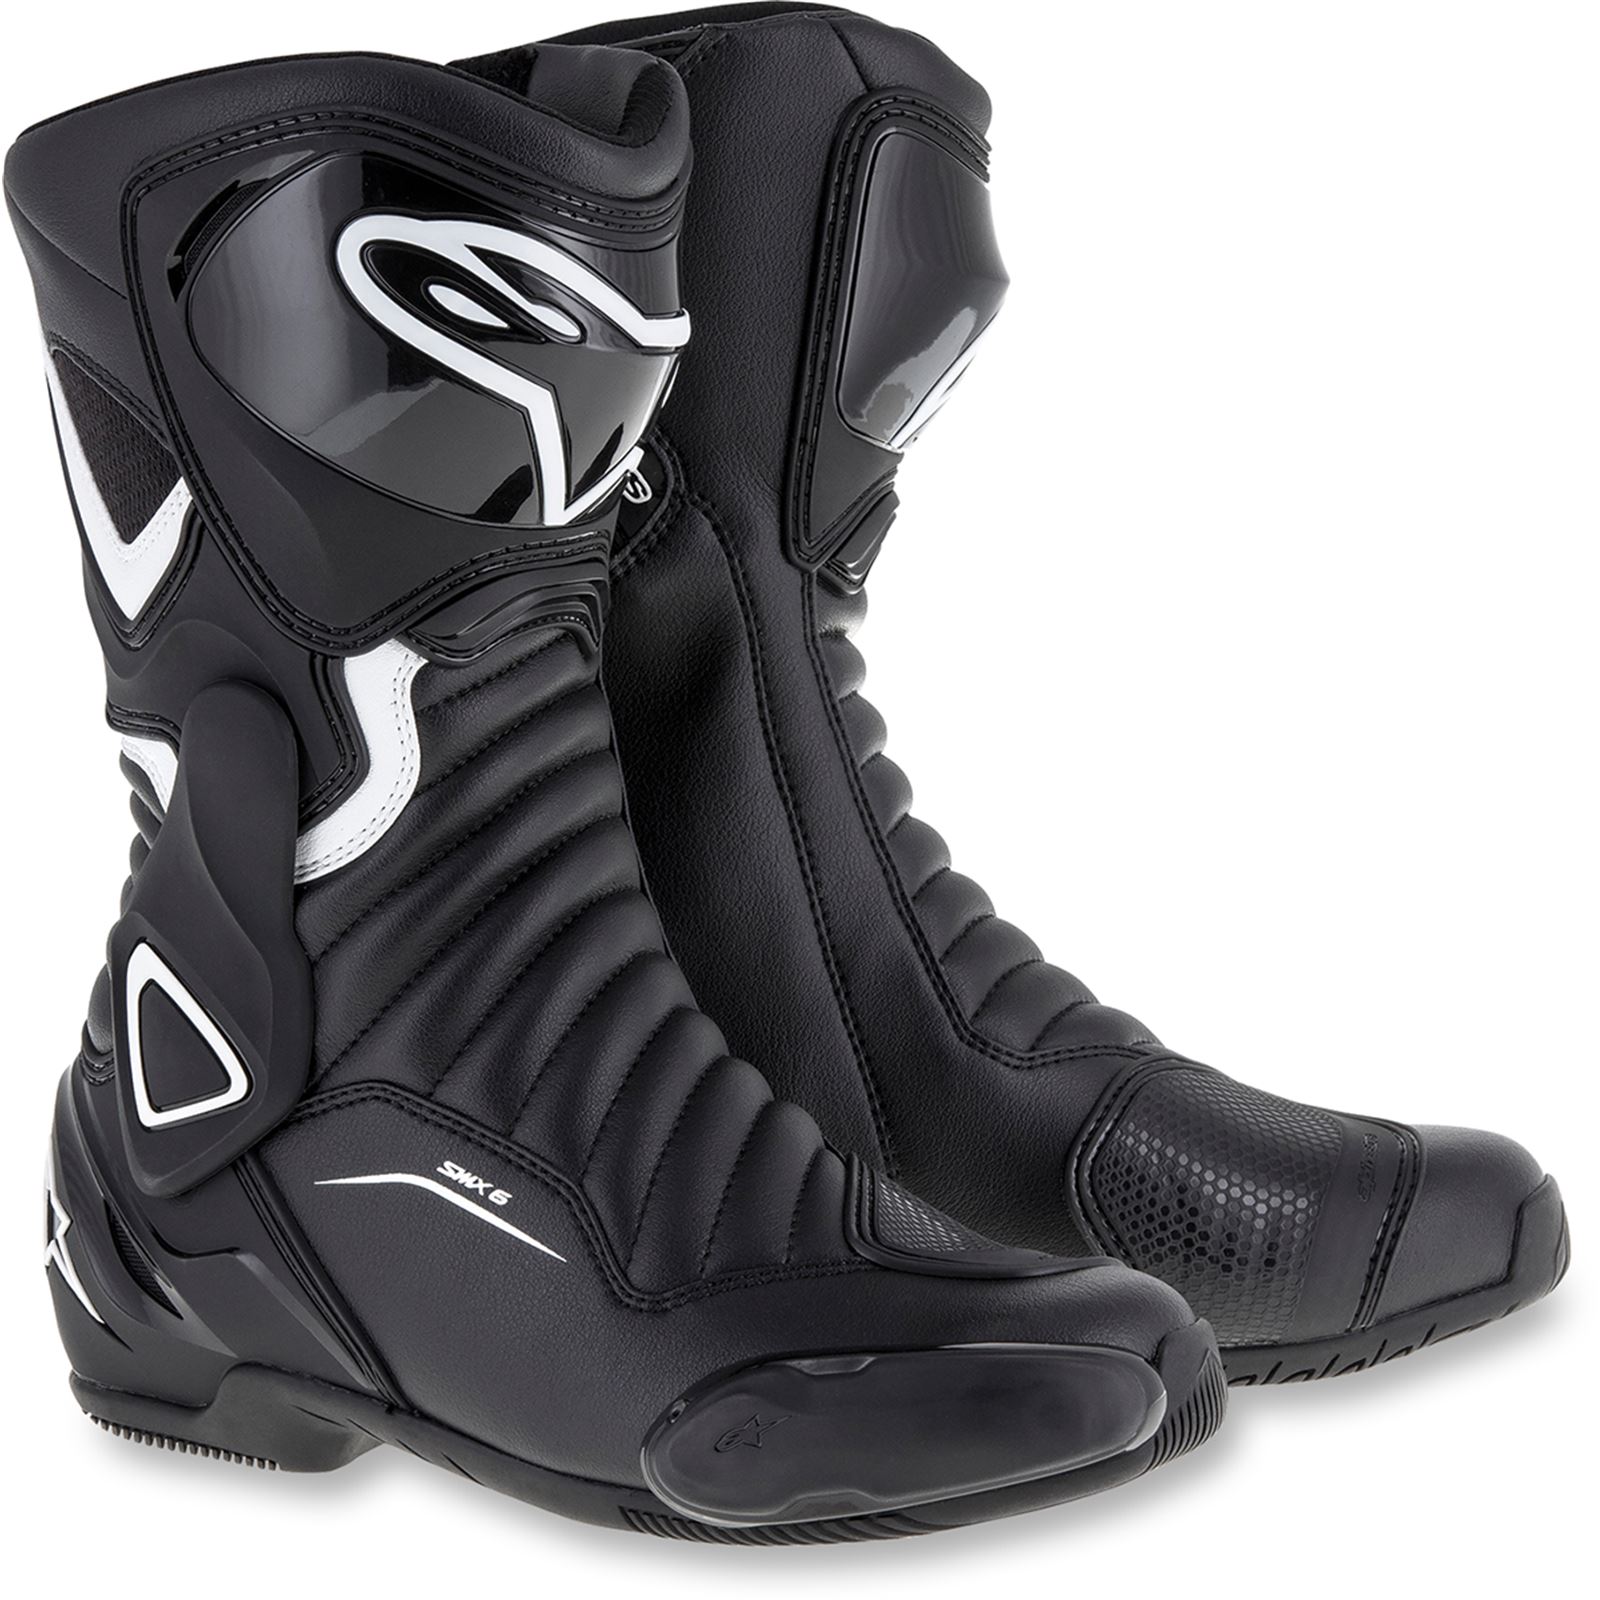 Alpinestars Stella SMX-6 v2 Boots - Black/White - Size 5.5